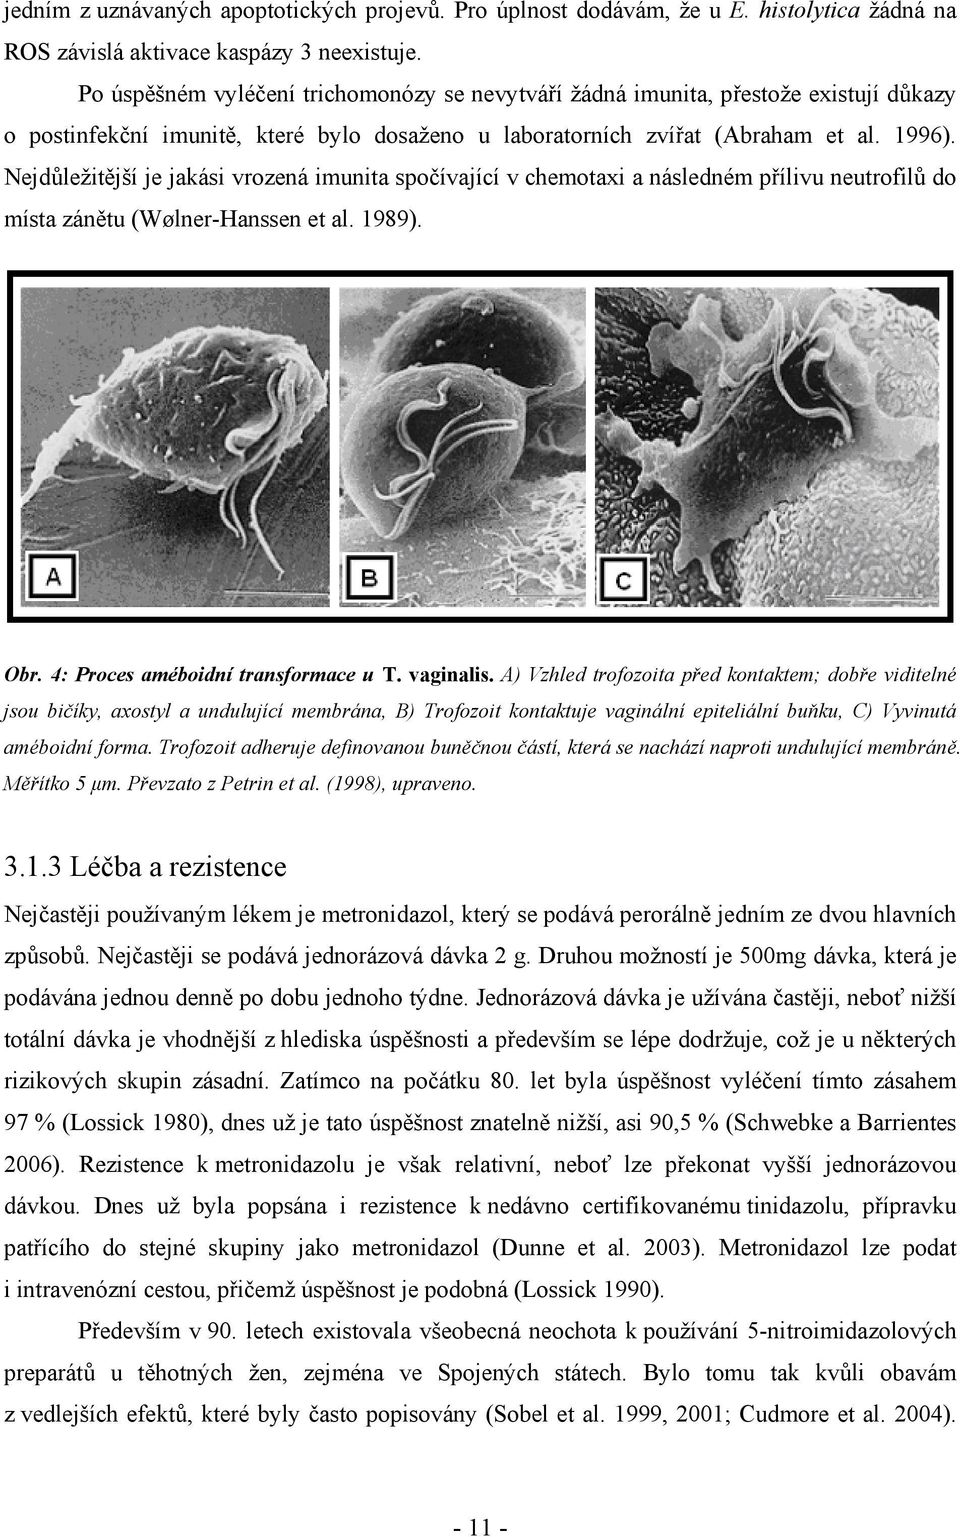 Nejdůležitější je jakási vrozená imunita spočívající v chemotaxi a následném přílivu neutrofilů do místa zánětu (Wølner-Hanssen et al. 1989). Obr. 4: Proces améboidní transformace u T. vaginalis.